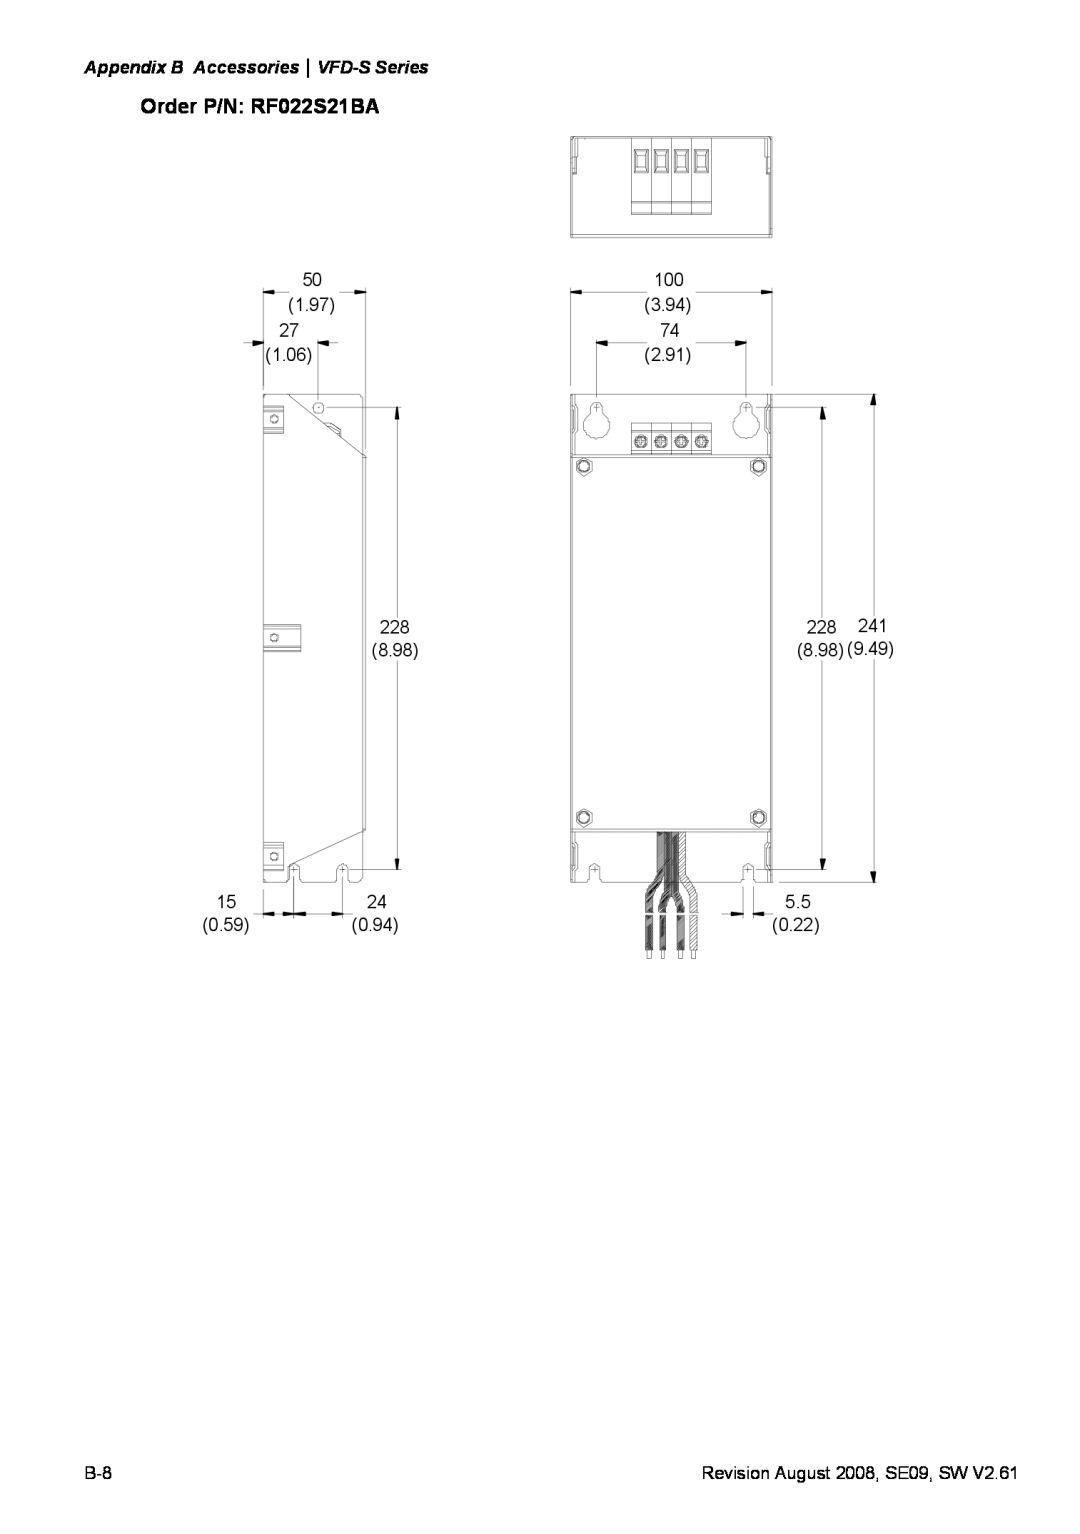 Delta Electronics manual Order P/N RF022S21BA, Appendix B AccessoriesVFD-S Series 